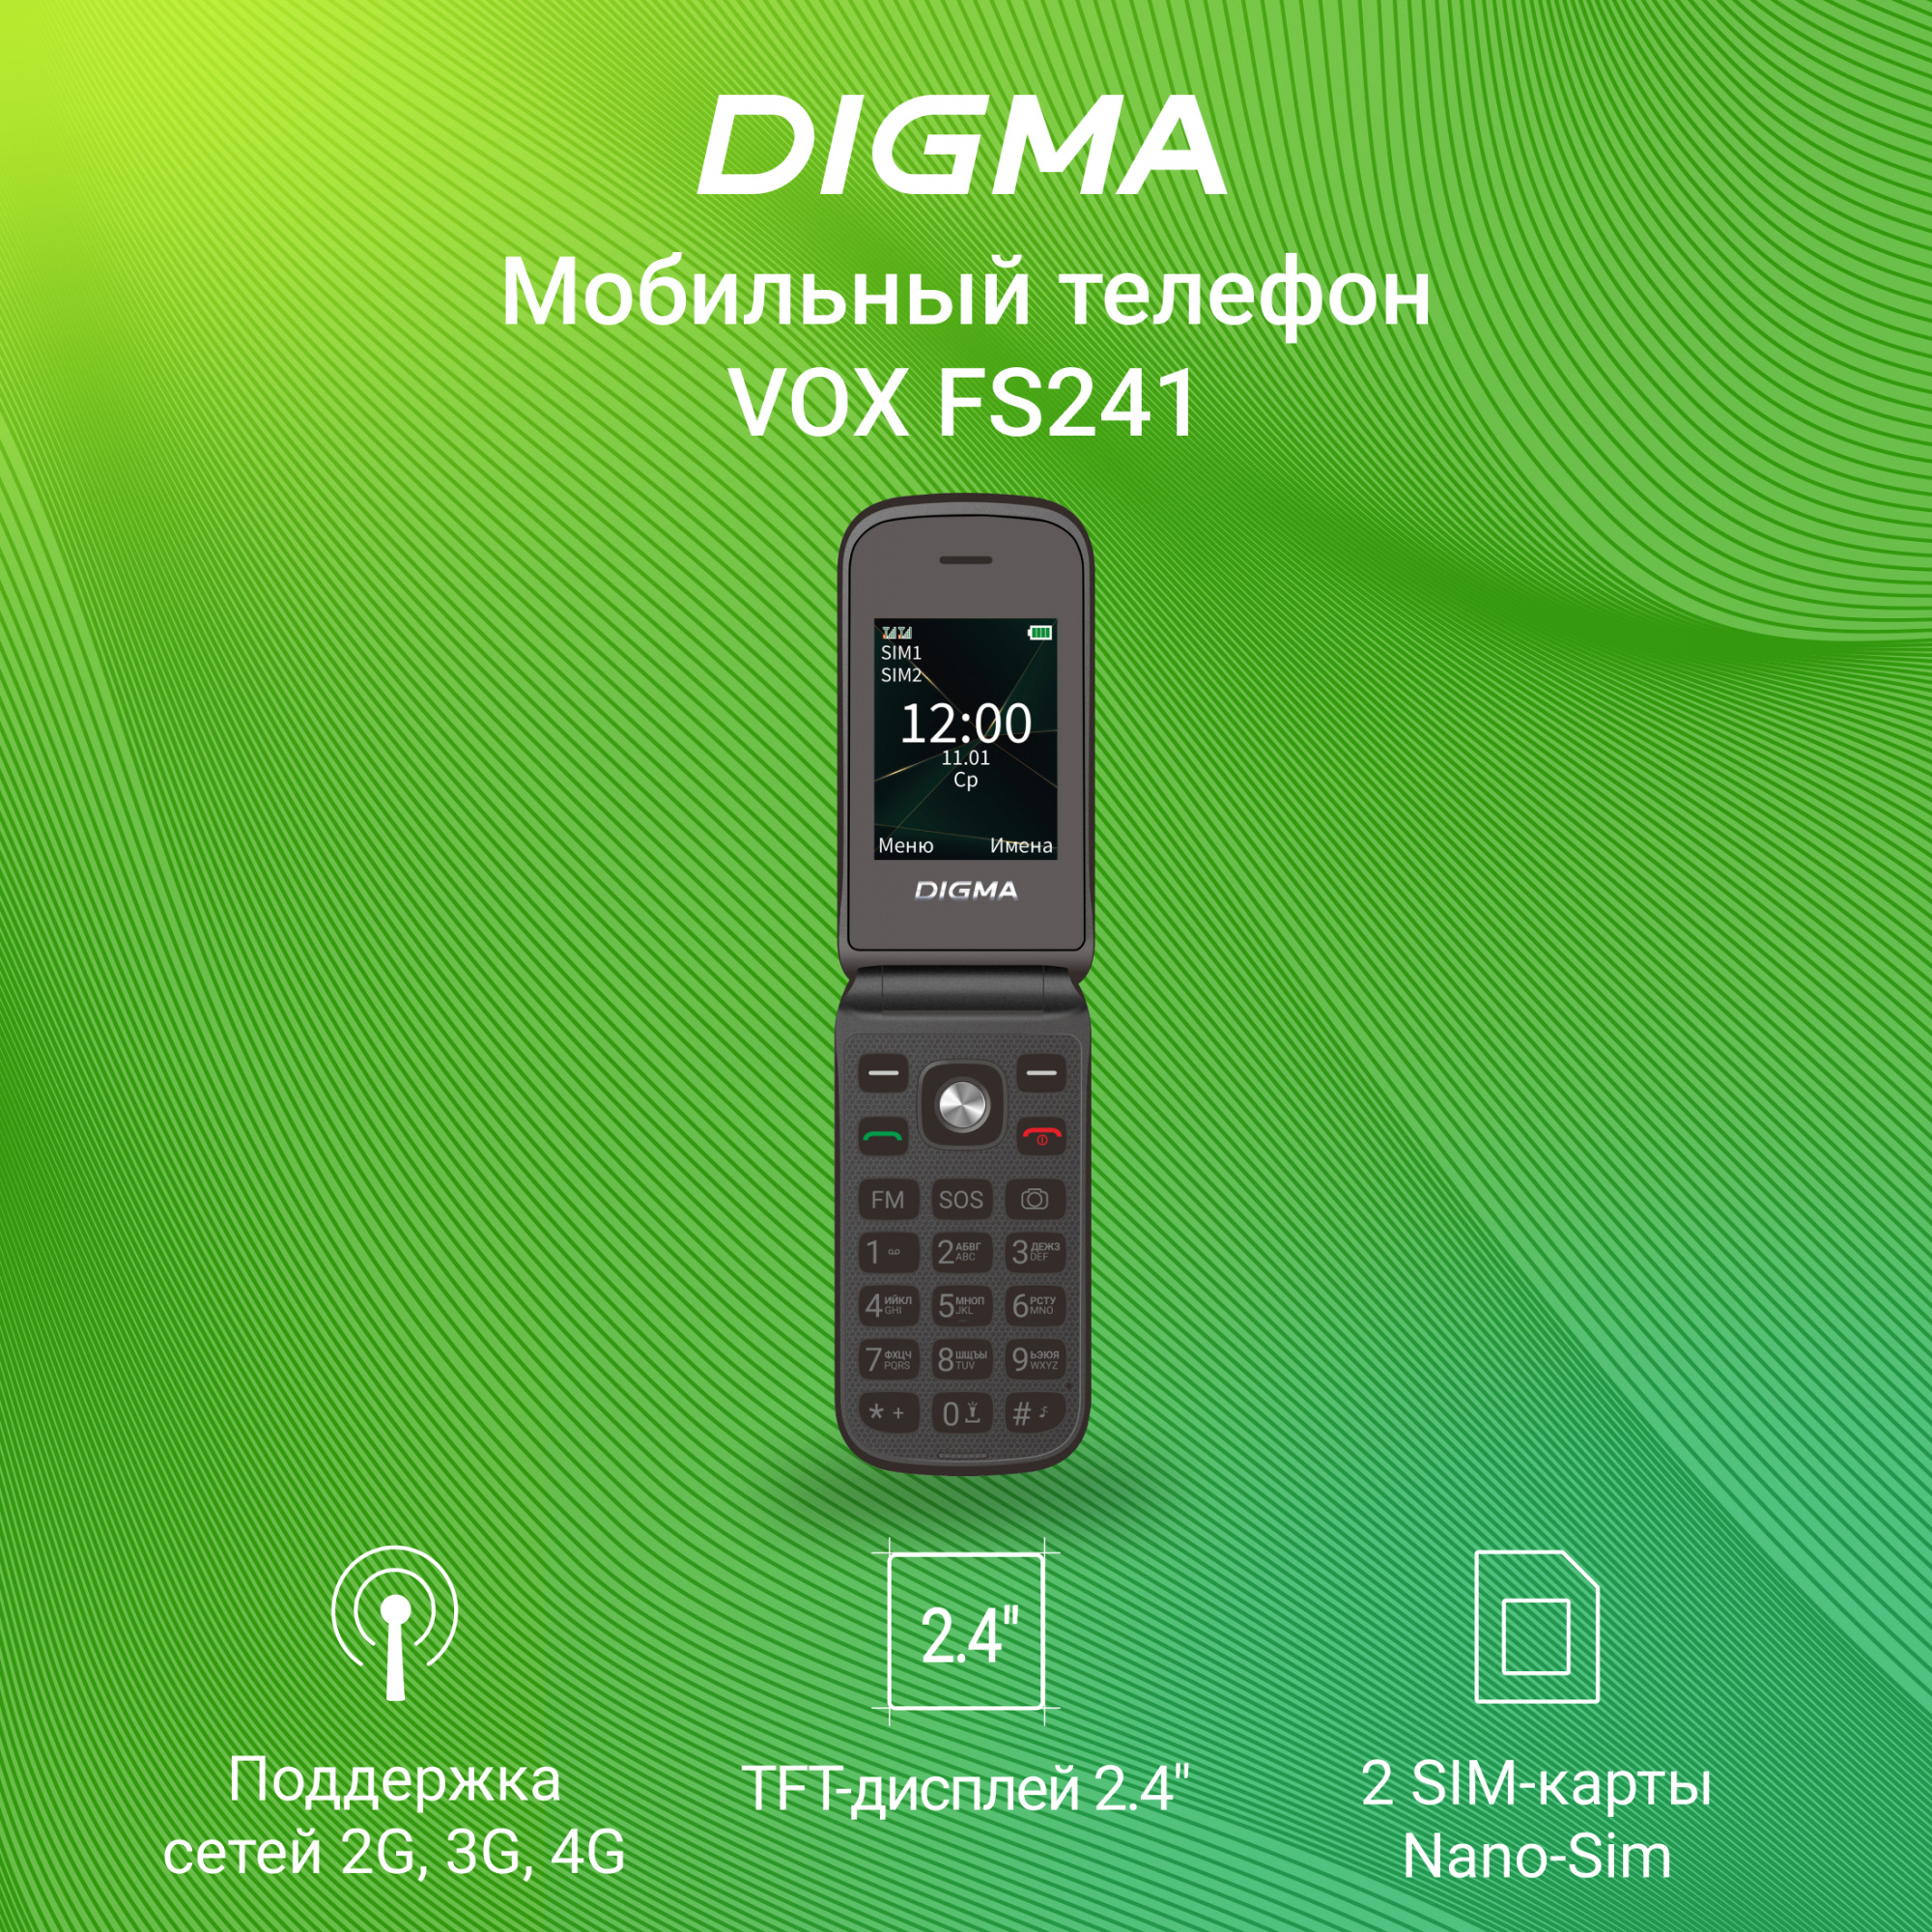 Мобильный телефон Digma Vox FS241, купить в Москве, цены в интернет-магазинах на Мегамаркет